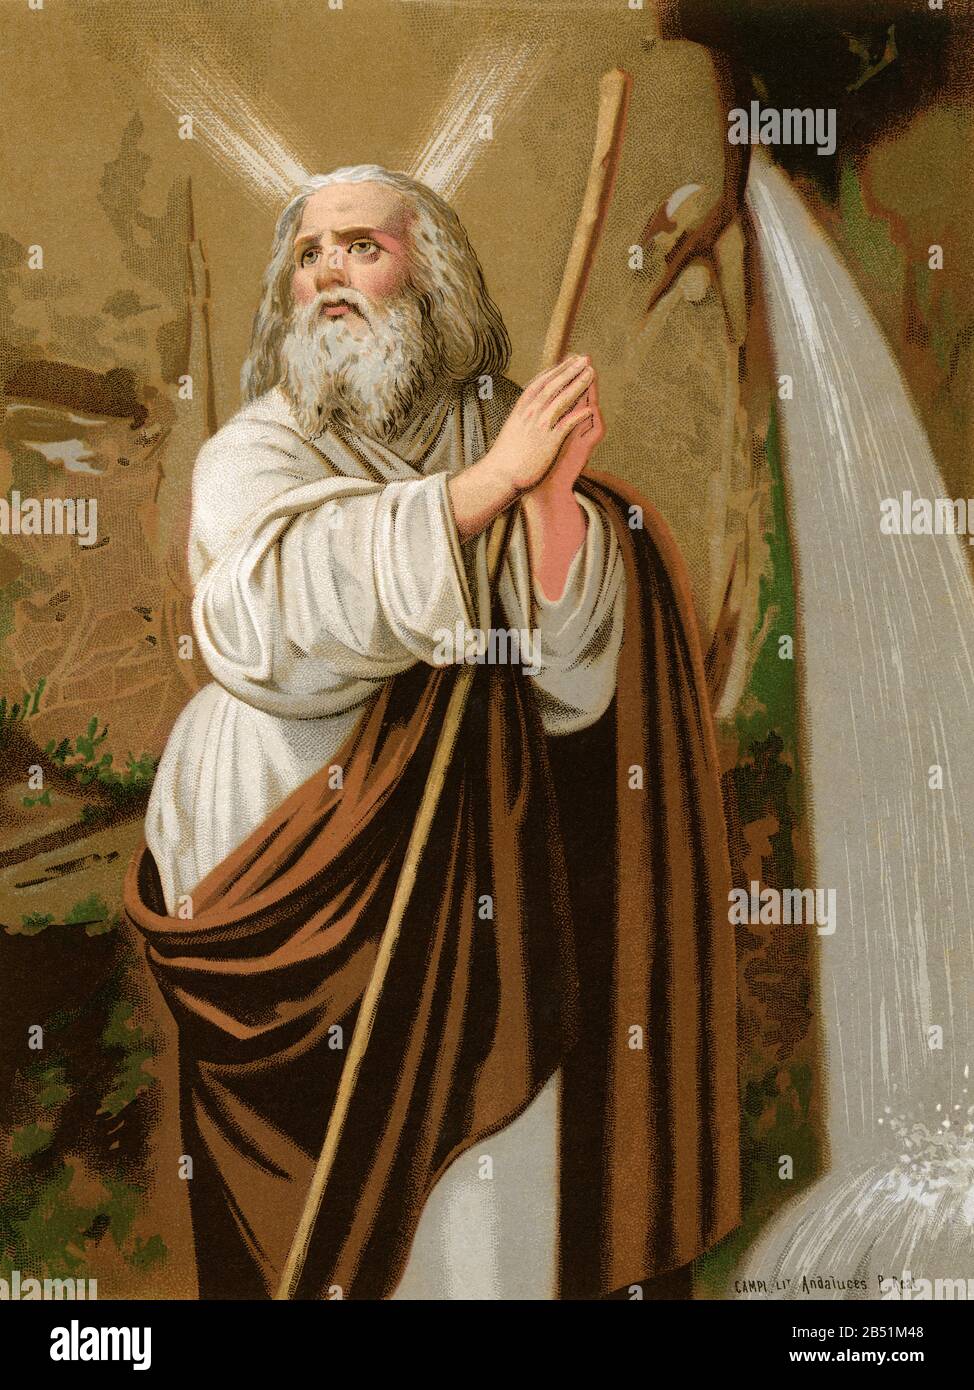 Portrait de lithographie de couleur ancienne. Moshe, le personnage de Moïse des religions abrahamiques, où il est vénéré comme prophète, législateur et chef spirituel Banque D'Images